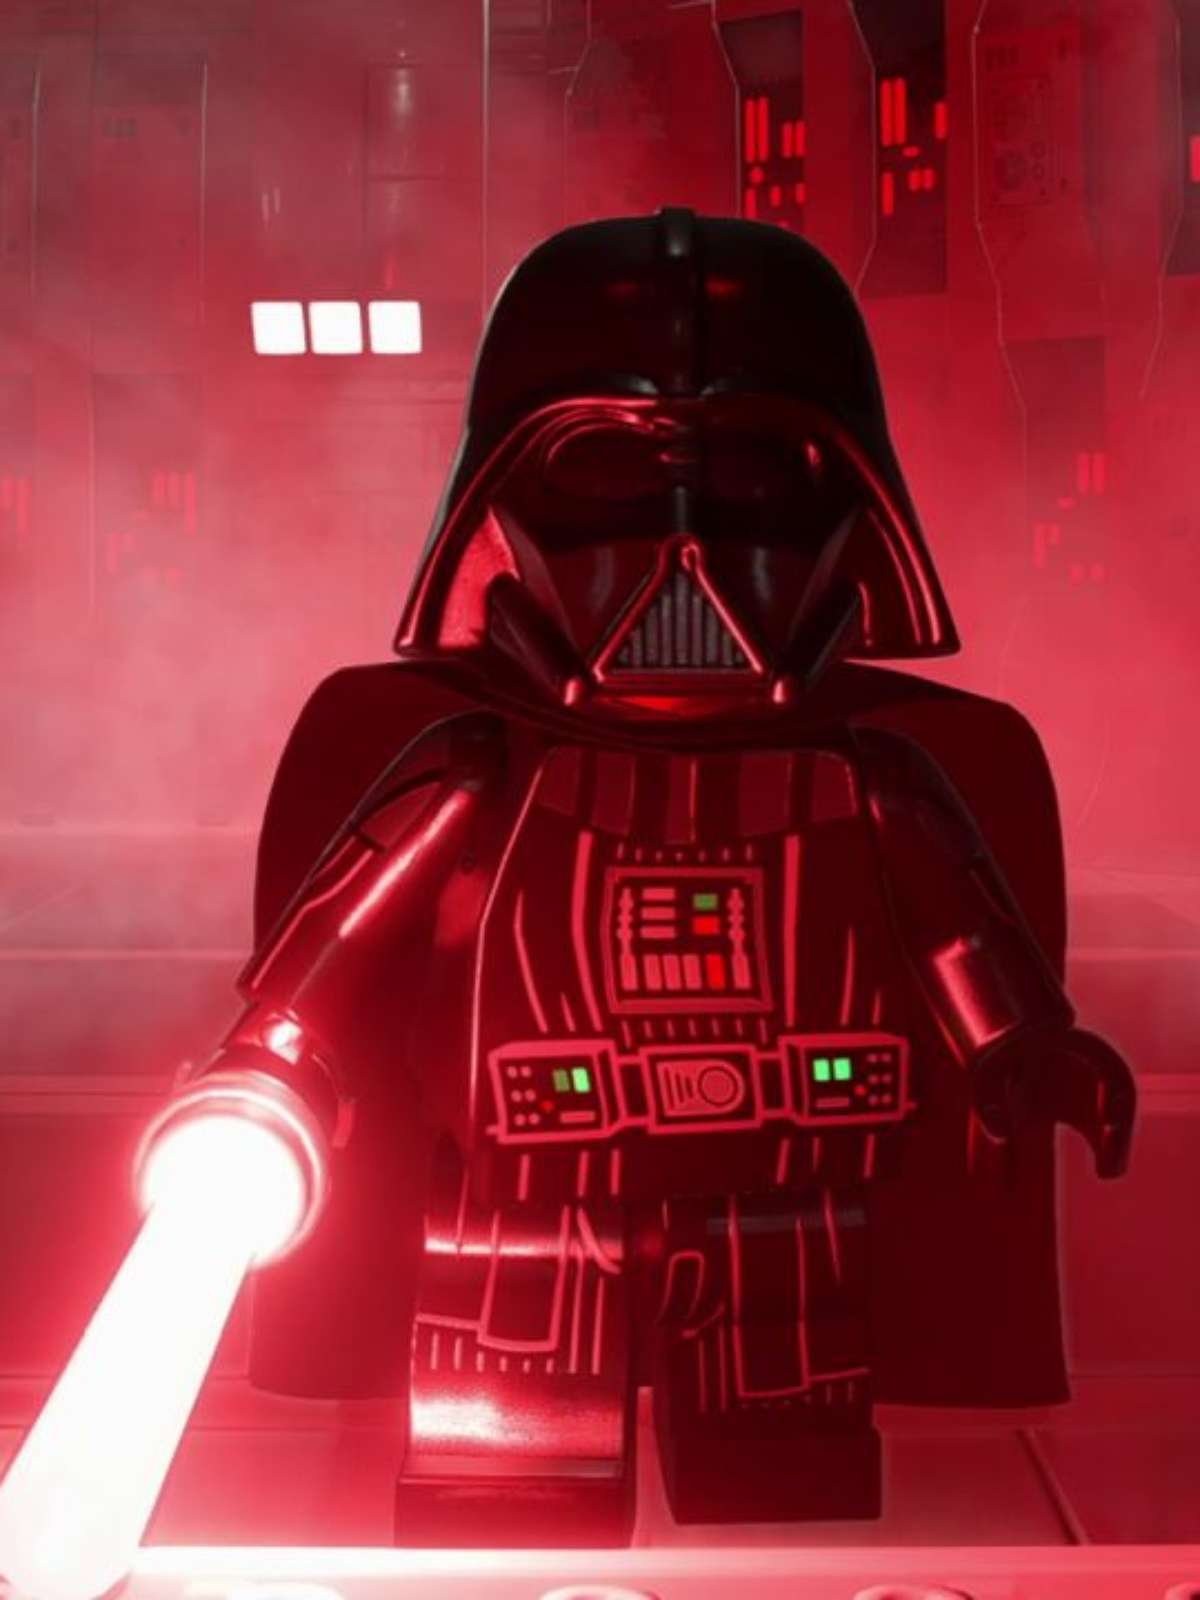 LEGO STAR WARS The Skywalker Saga já foi lançado